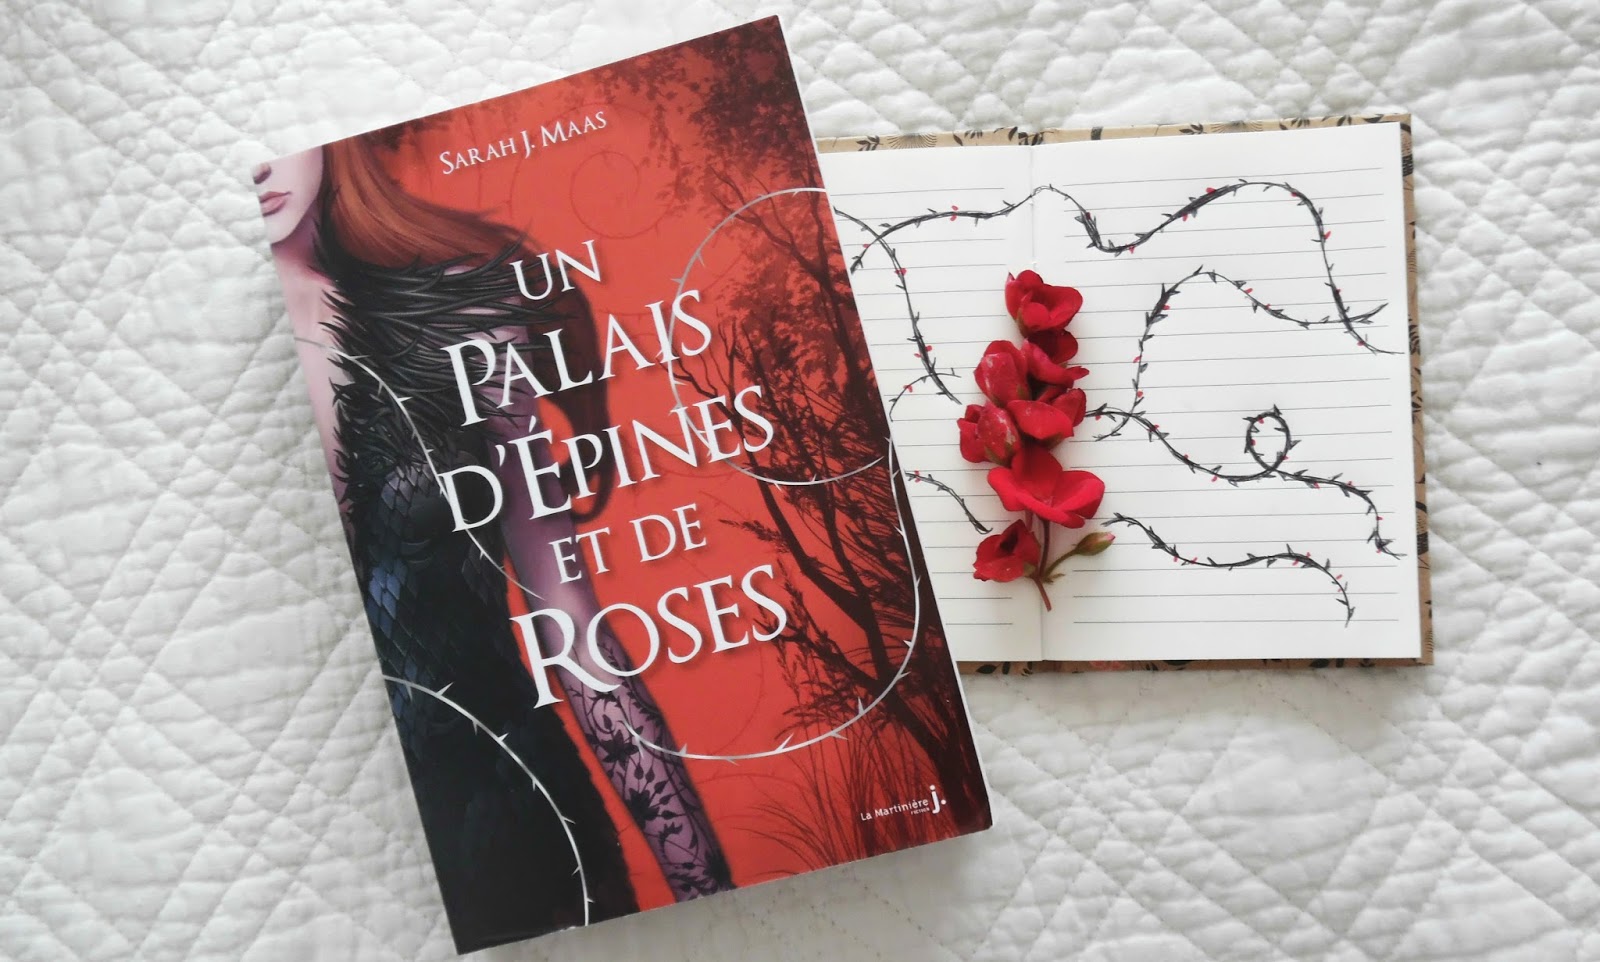 Un palais d'épines et de roses - Des livres et mes envies